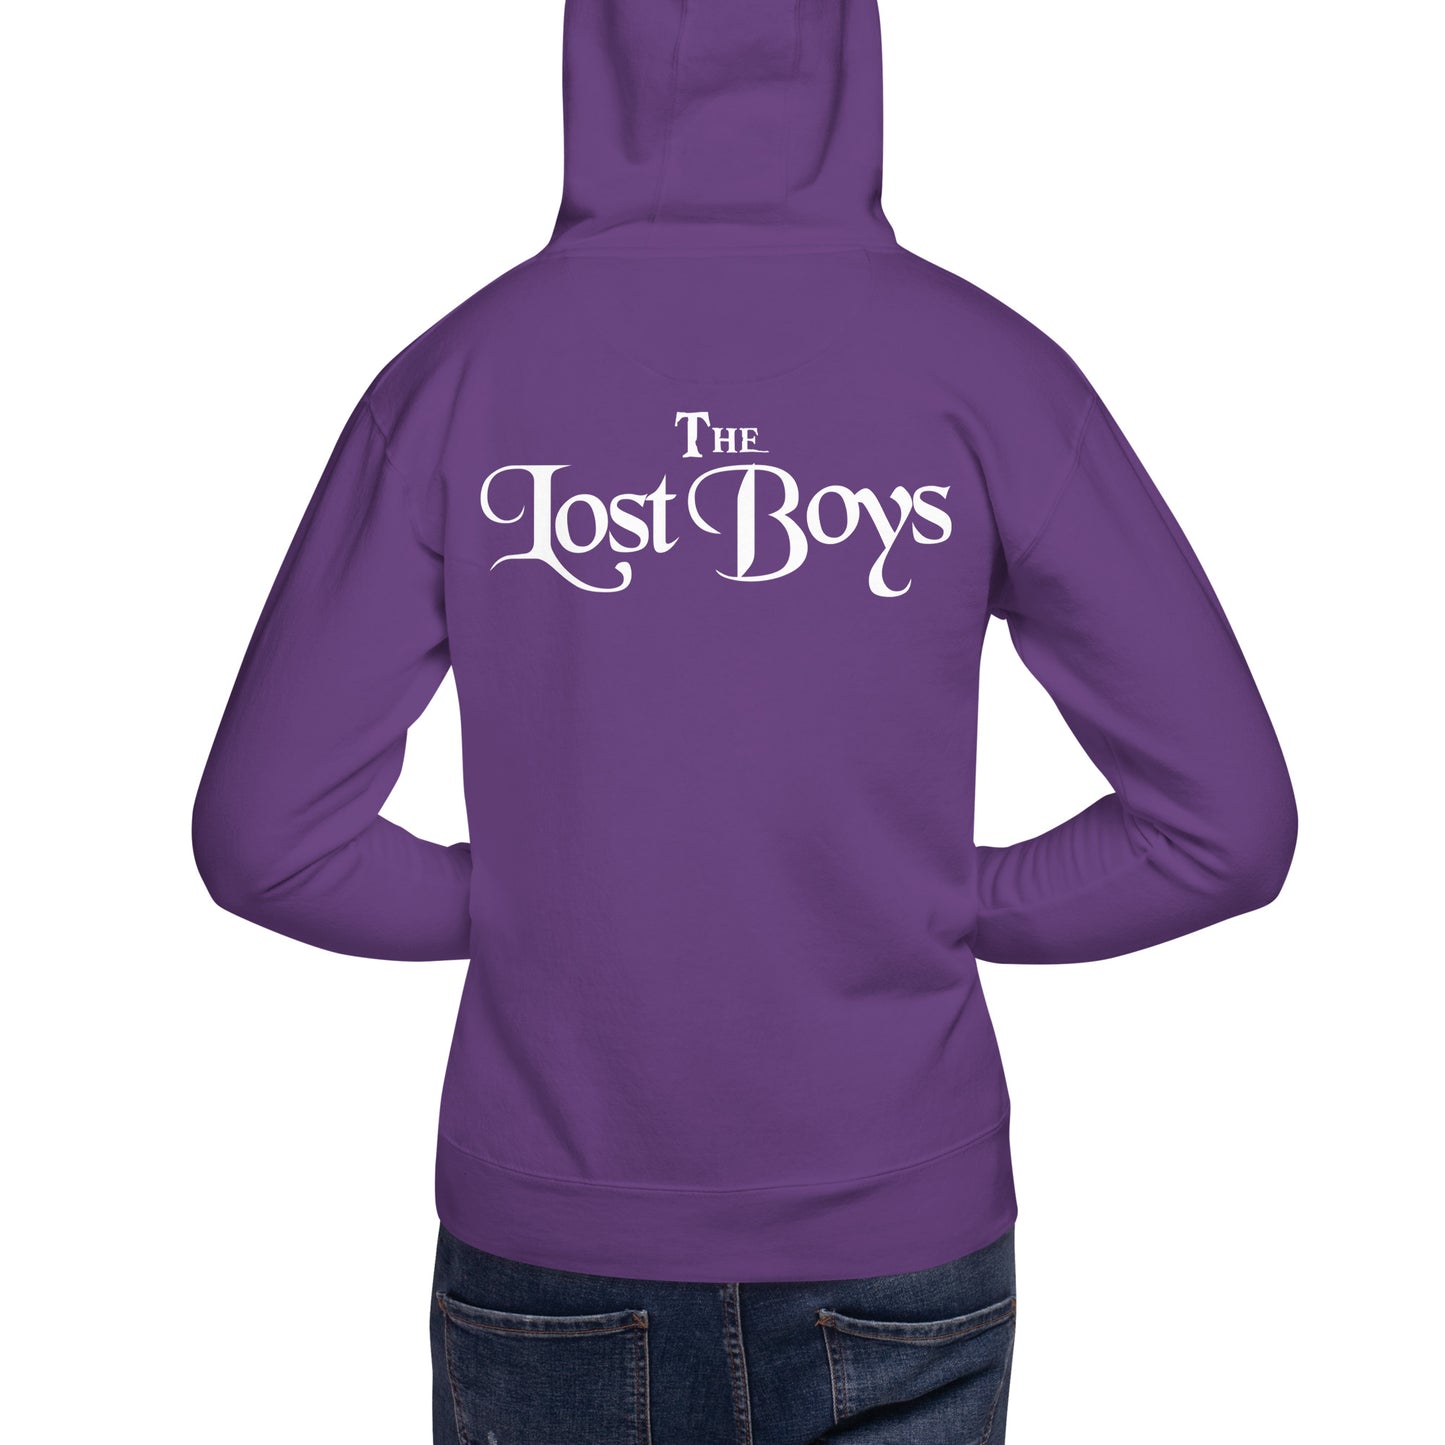 The Lost Boys - Printed Unisex Premium Hoodie